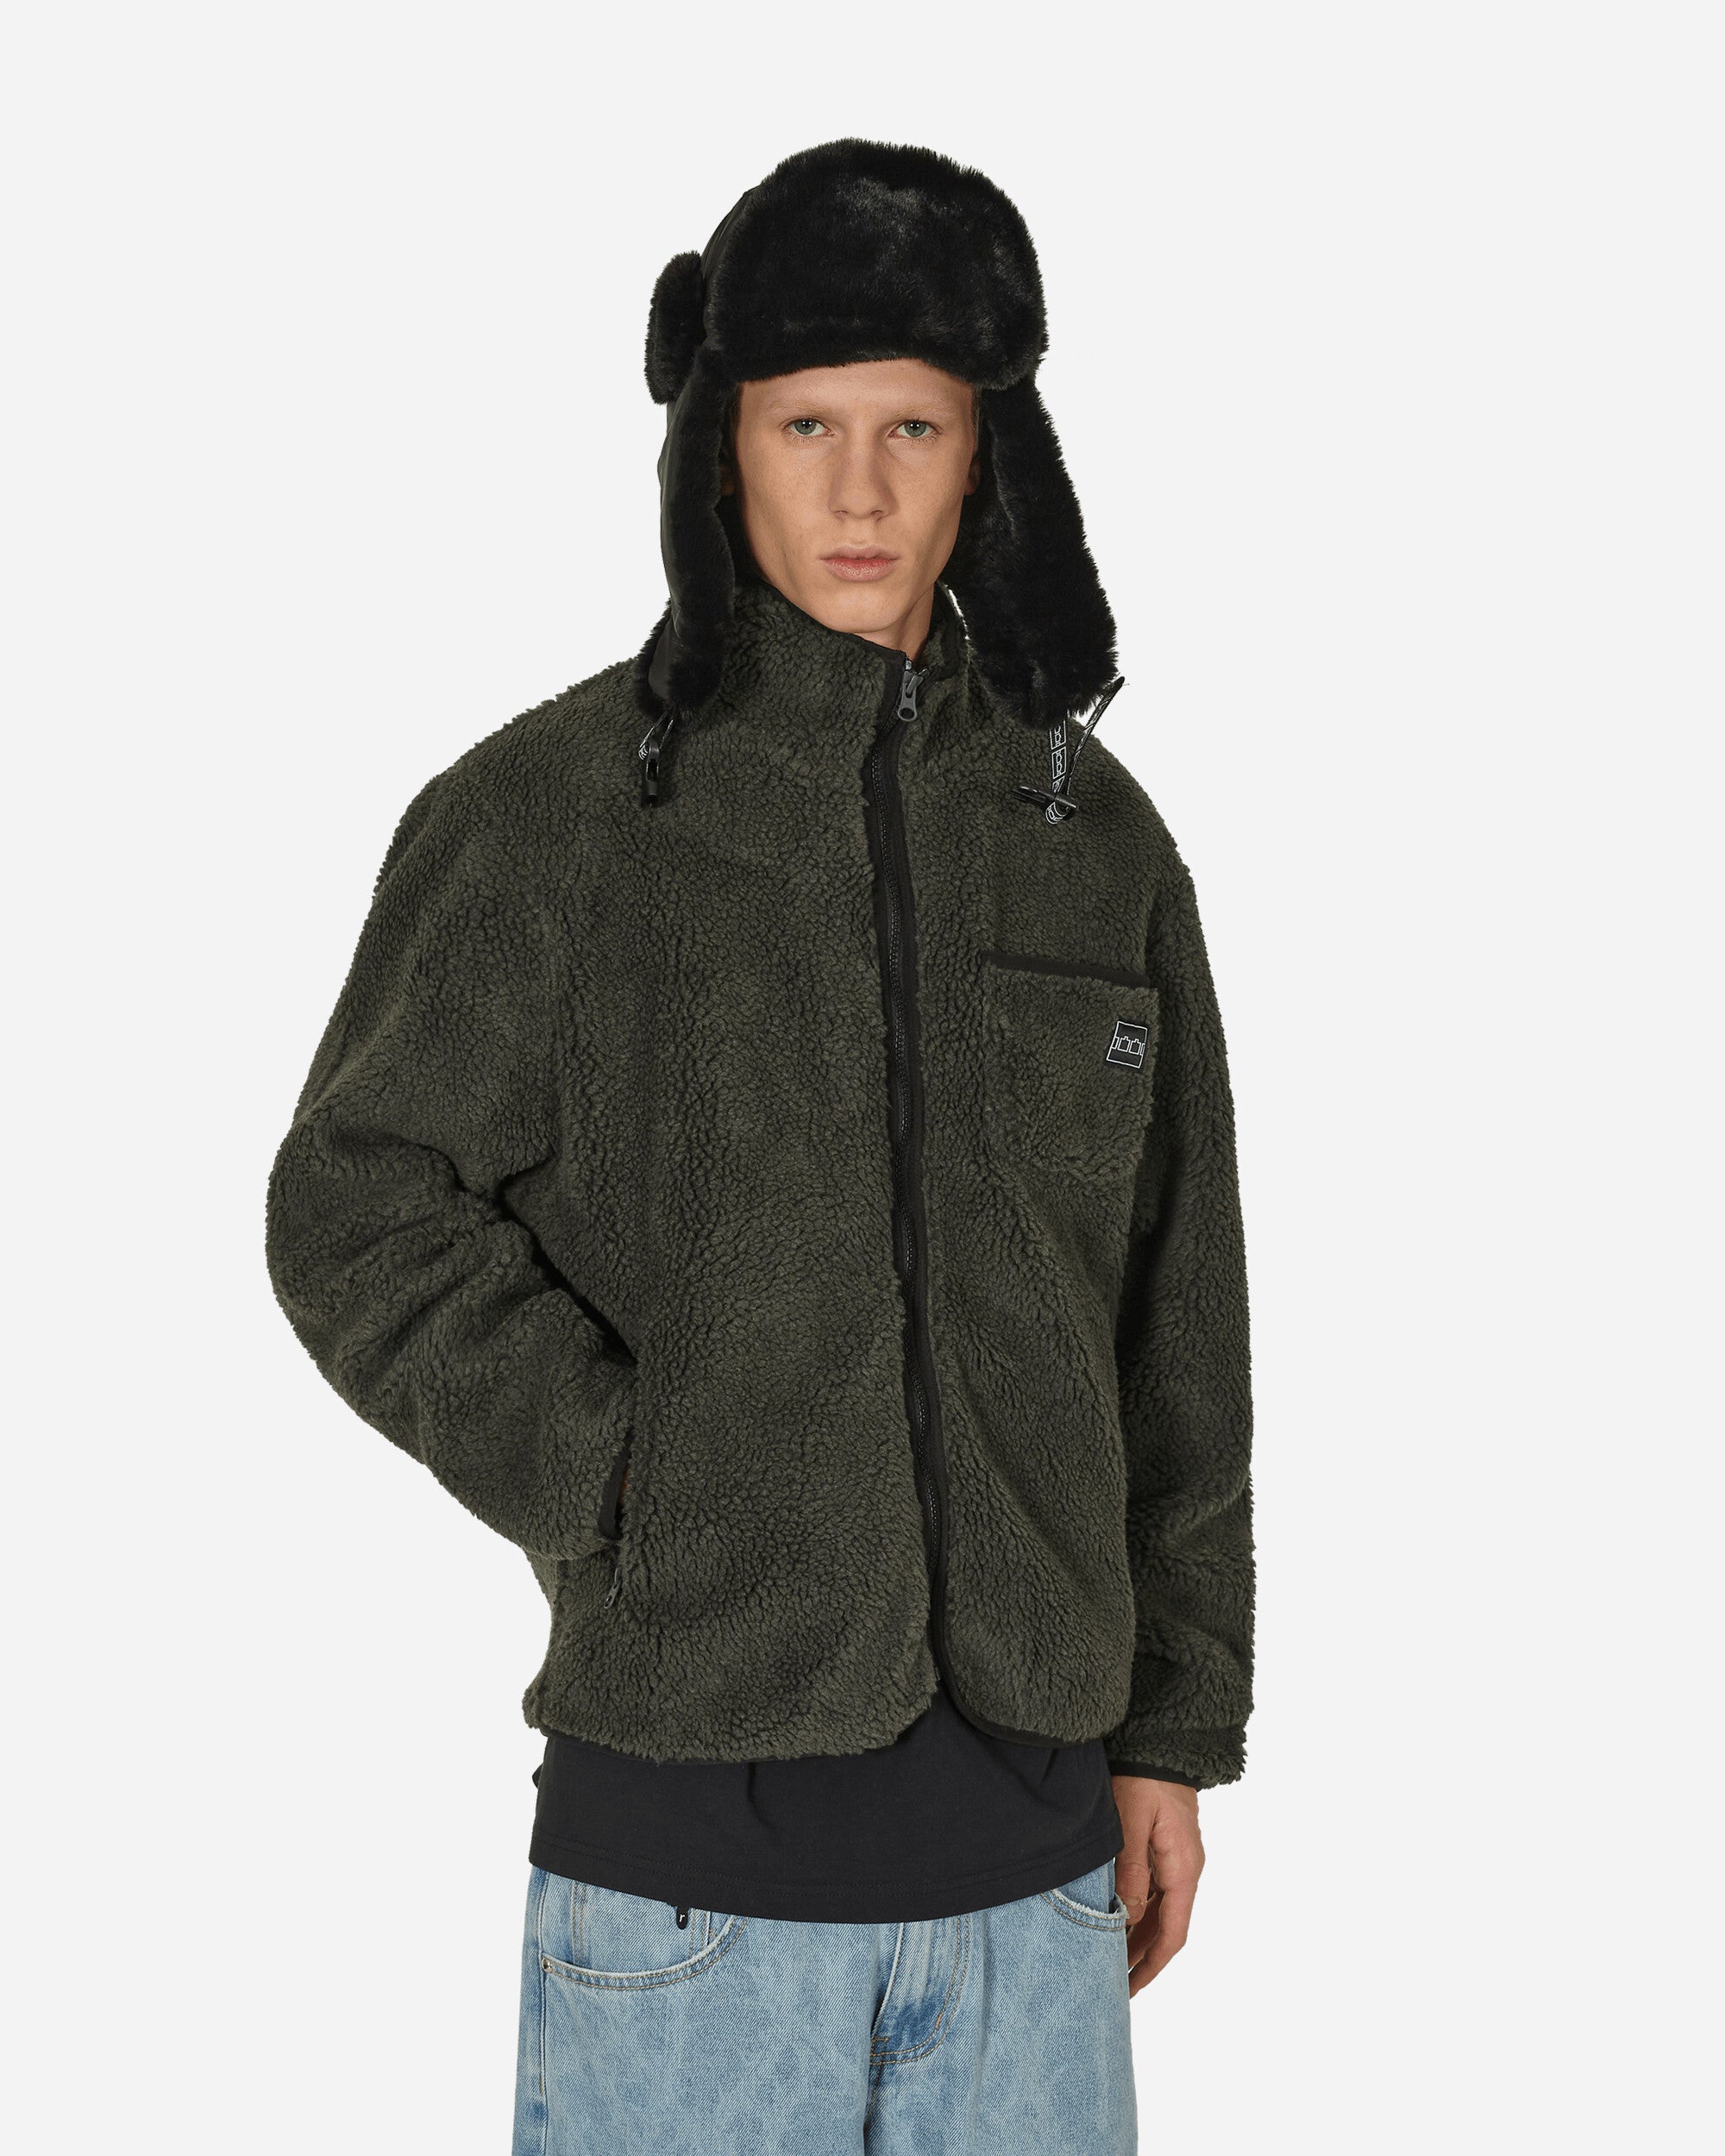 Zip Fleece Jacket Charcoal / Black